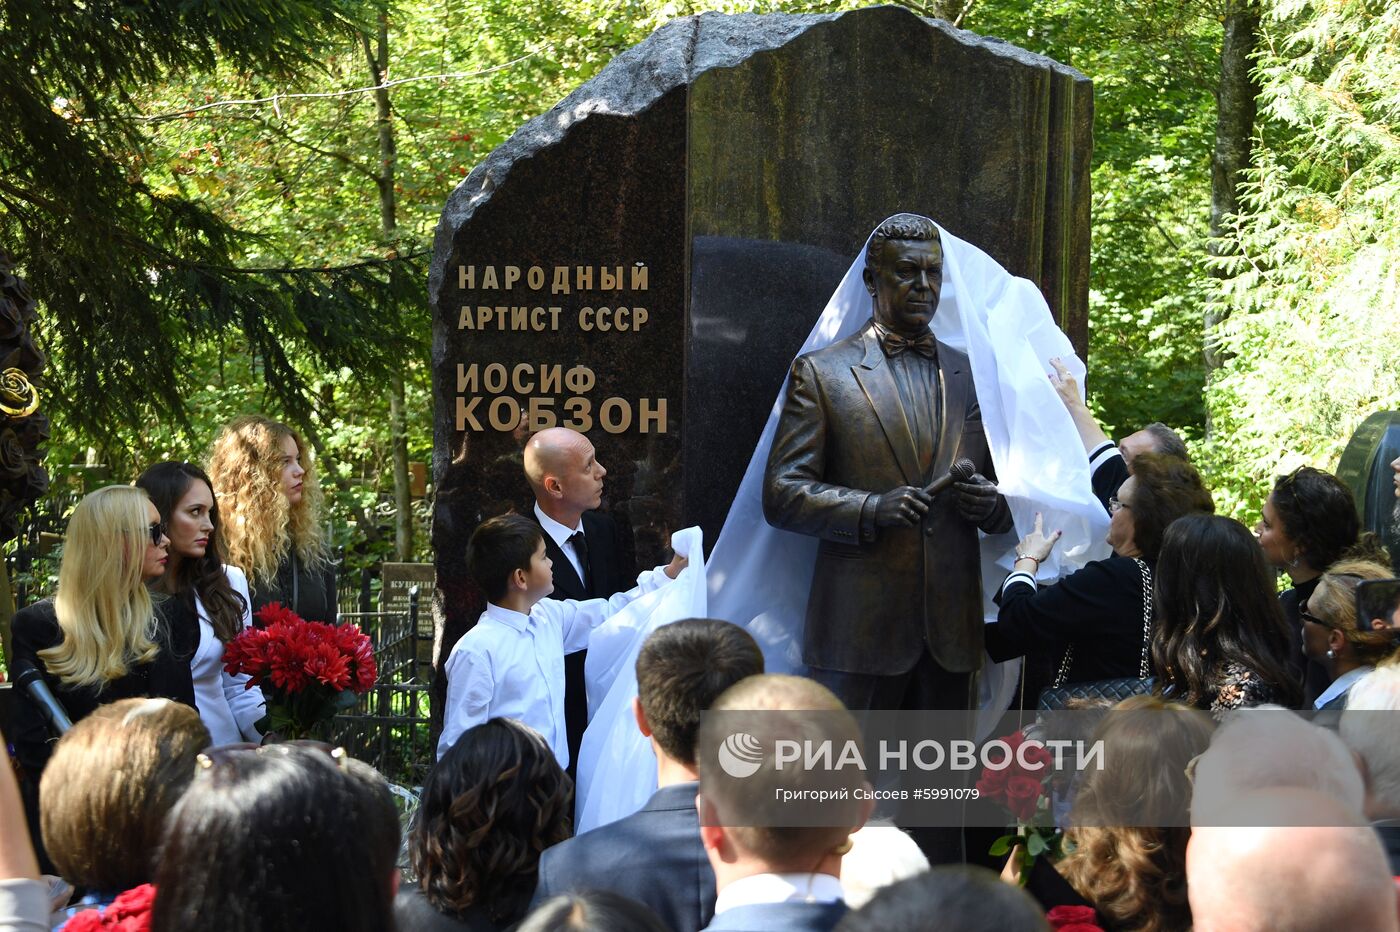 Открытие памятника И. Кобзону 